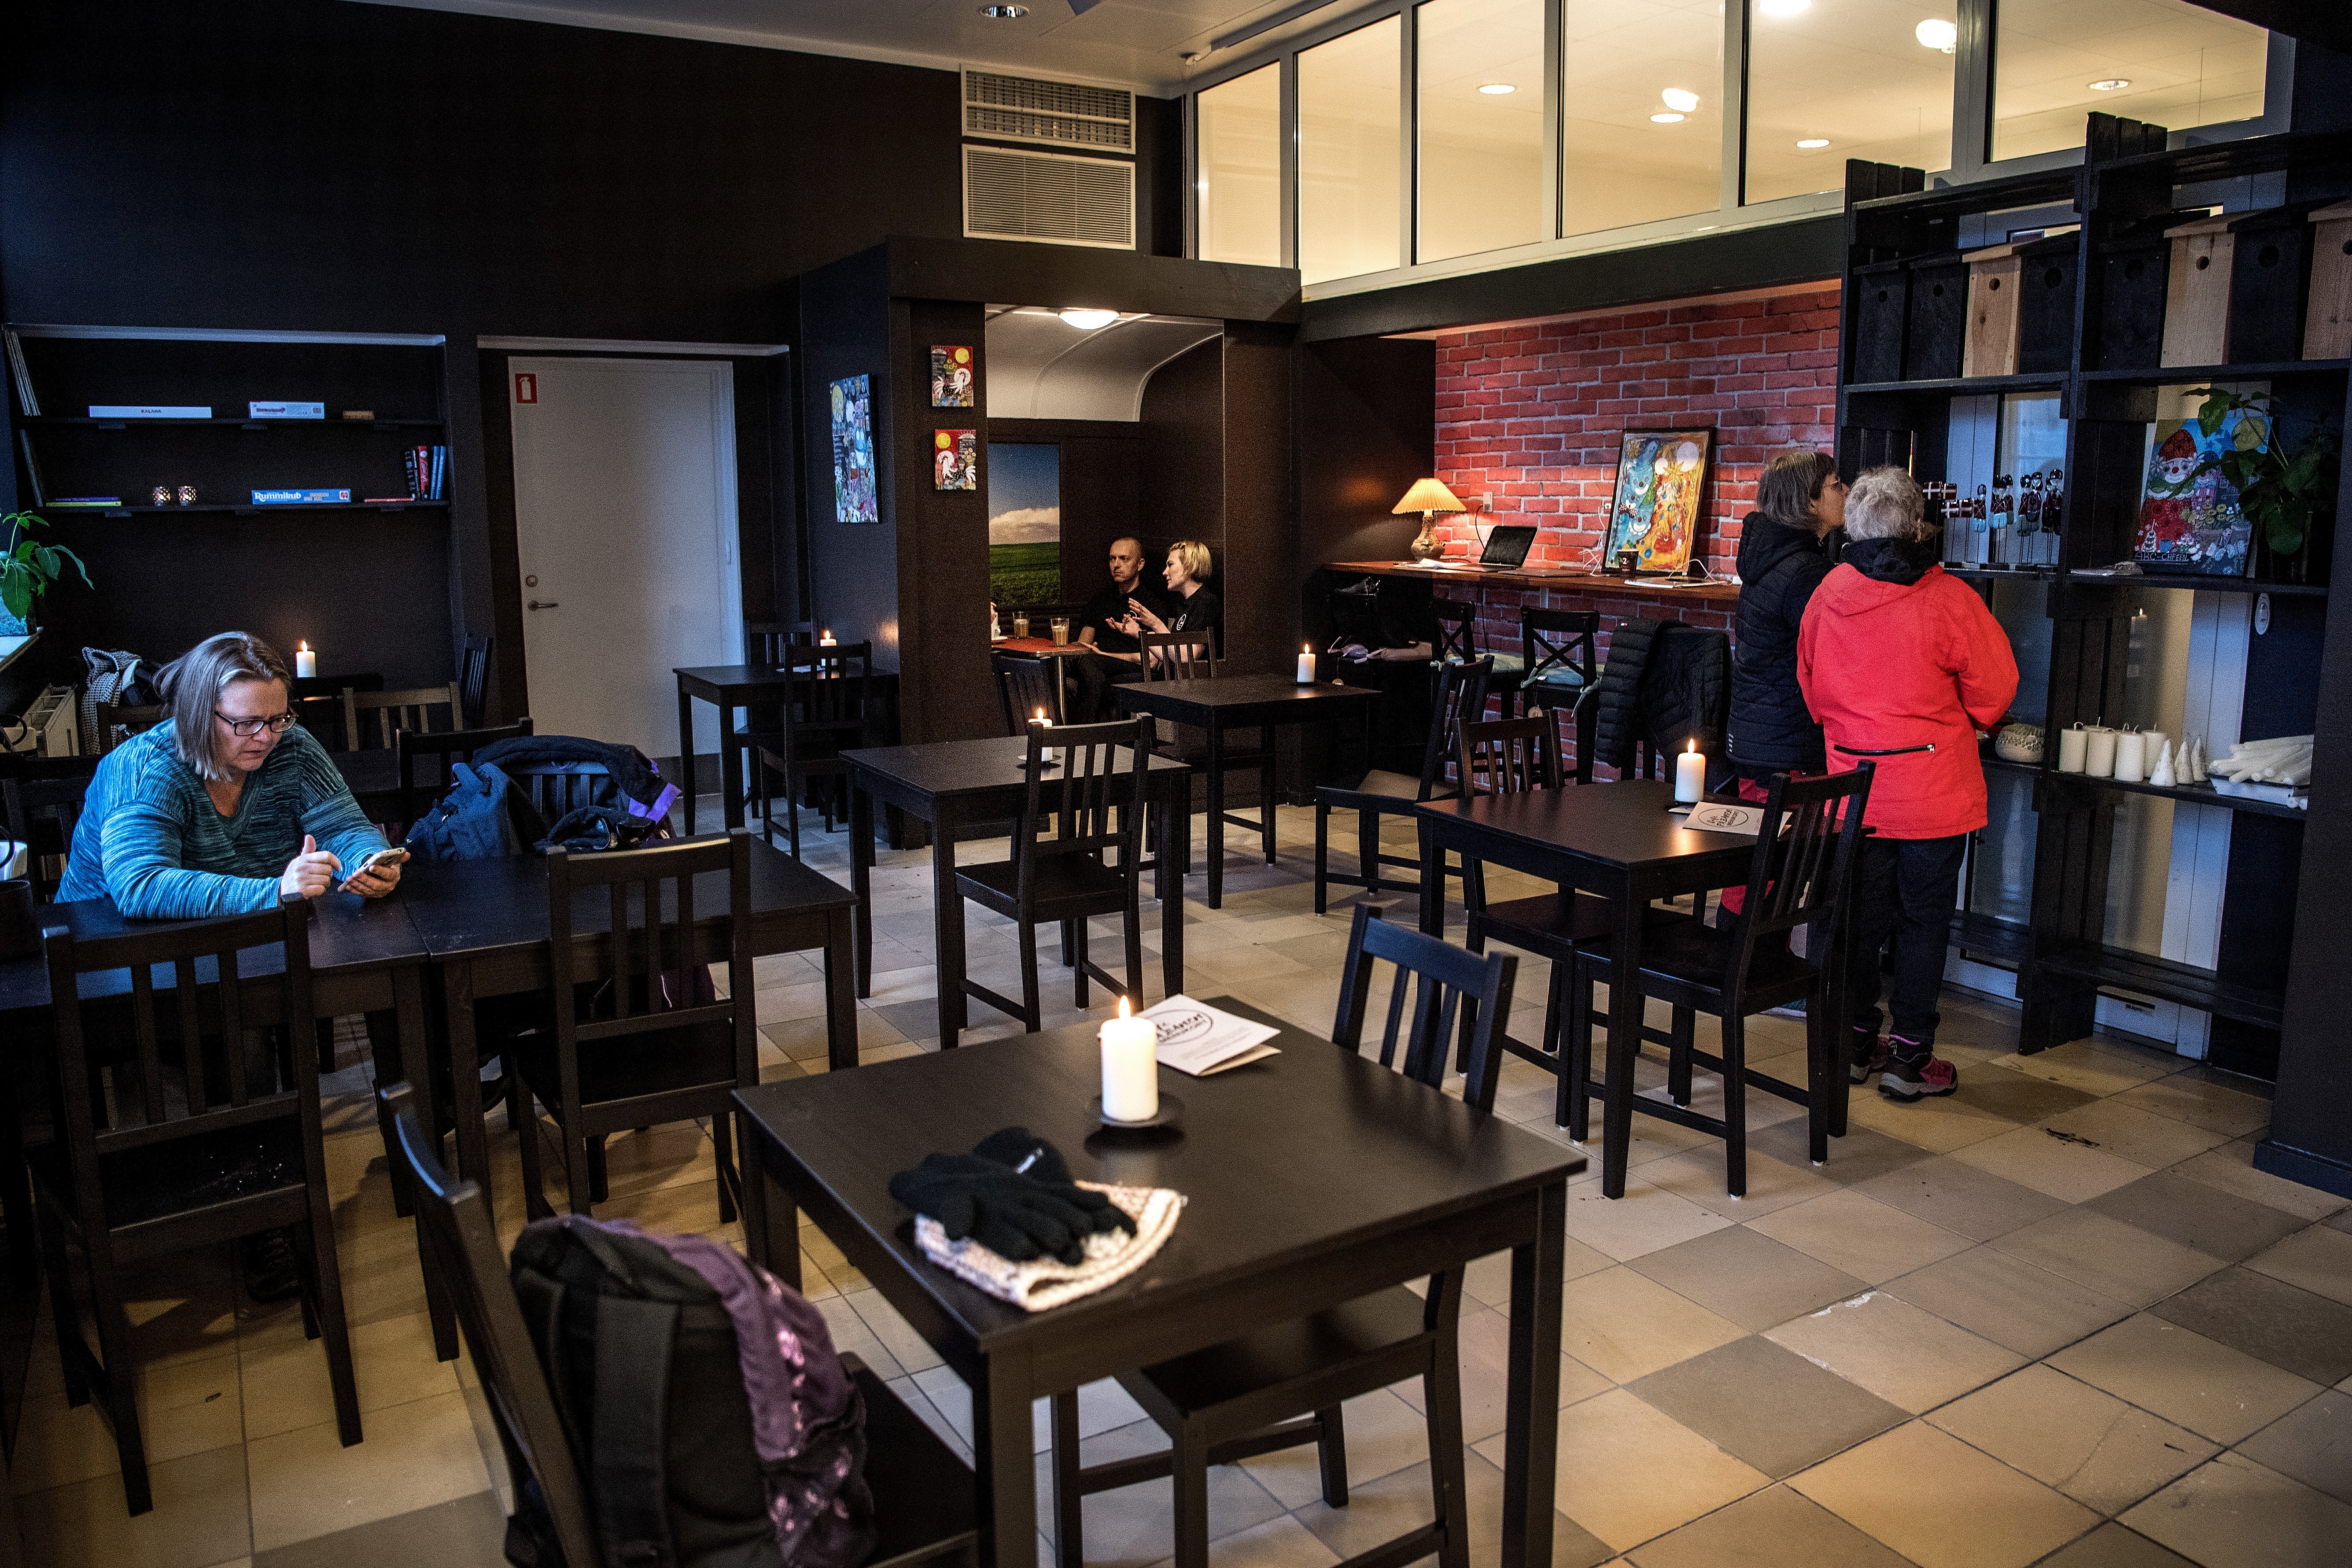 Cafe på Banen er en succes - alligevel lukker den